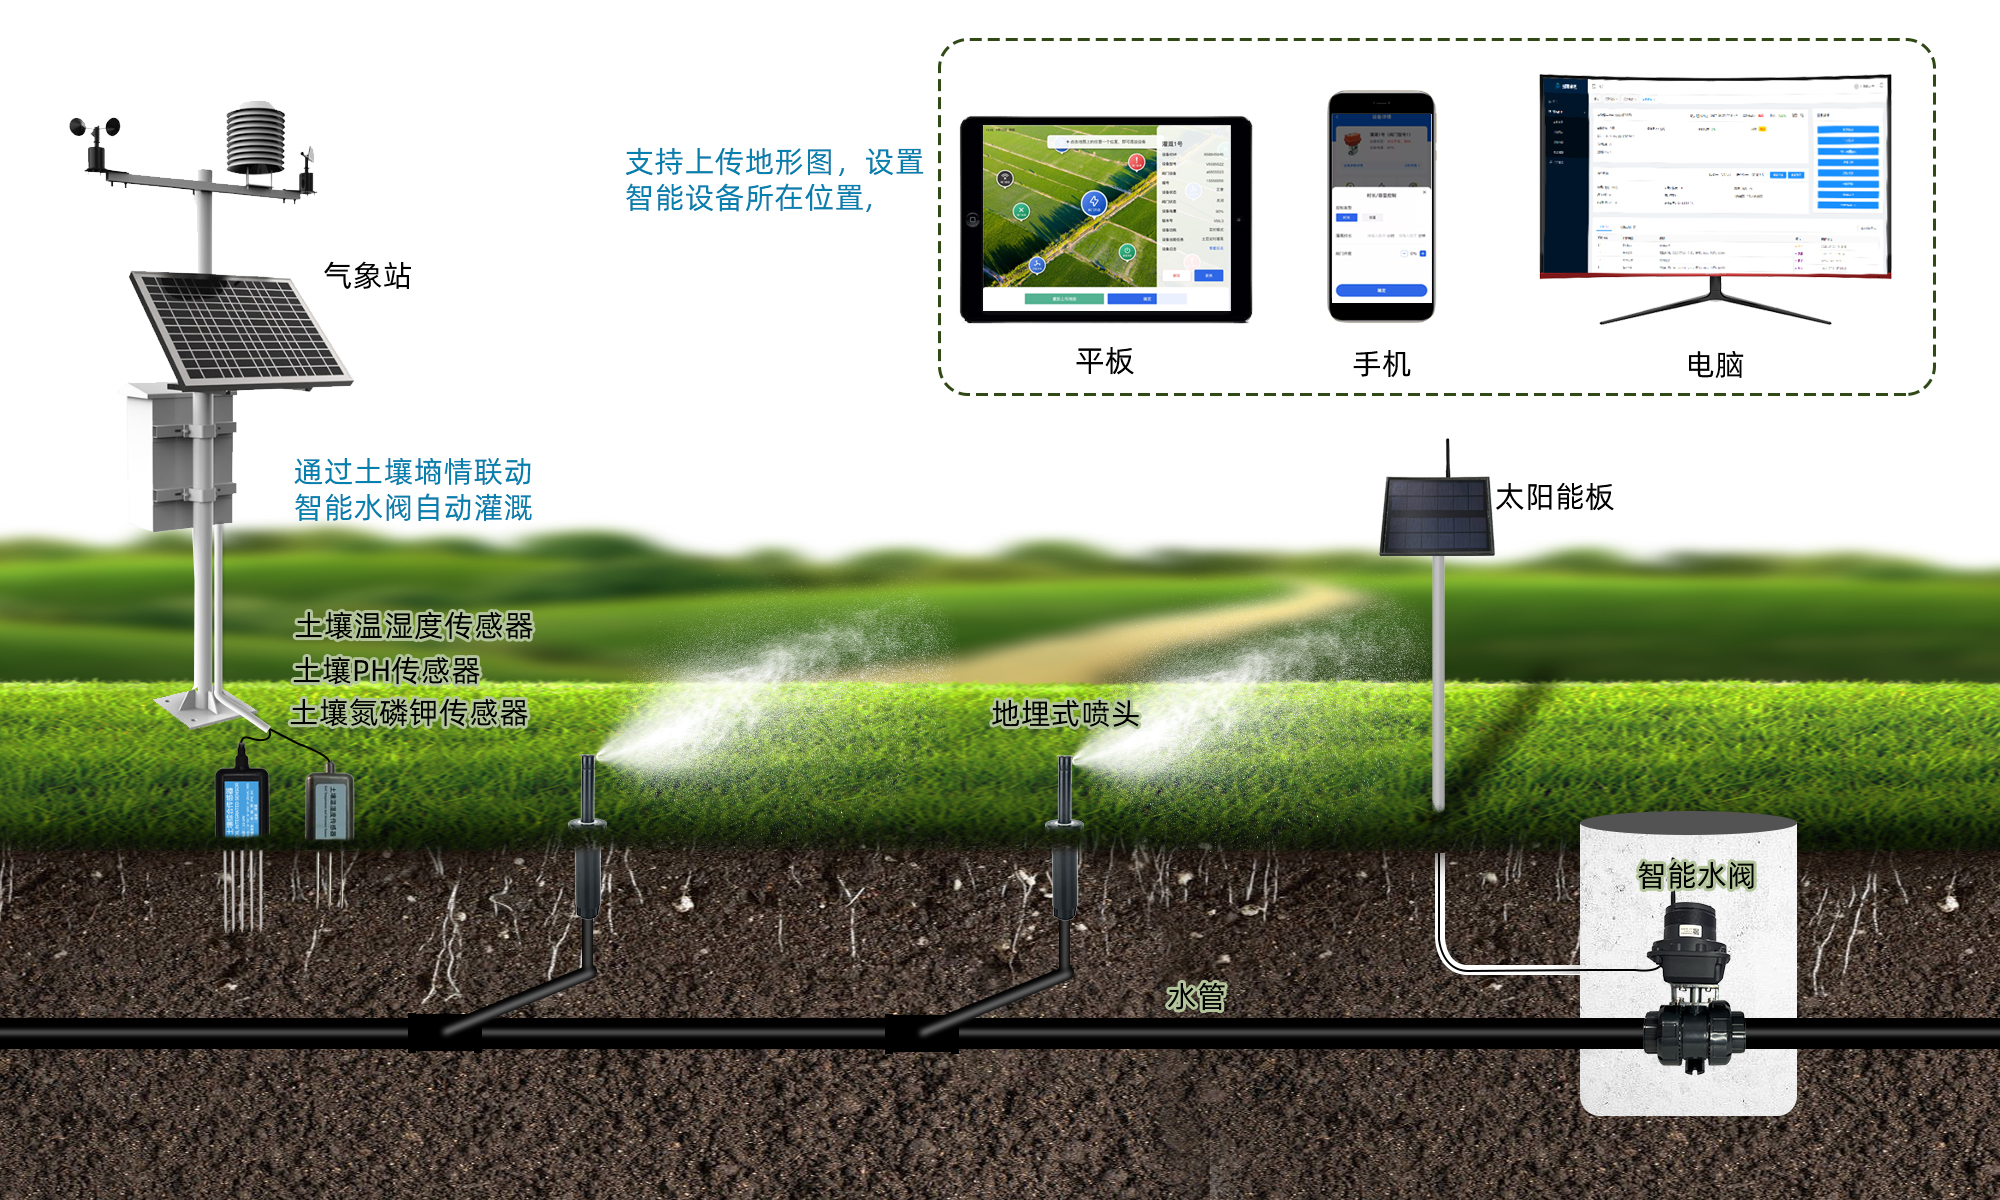 无线智能灌溉控制器融合自动化、信息化等现代管理技术实现精准灌溉